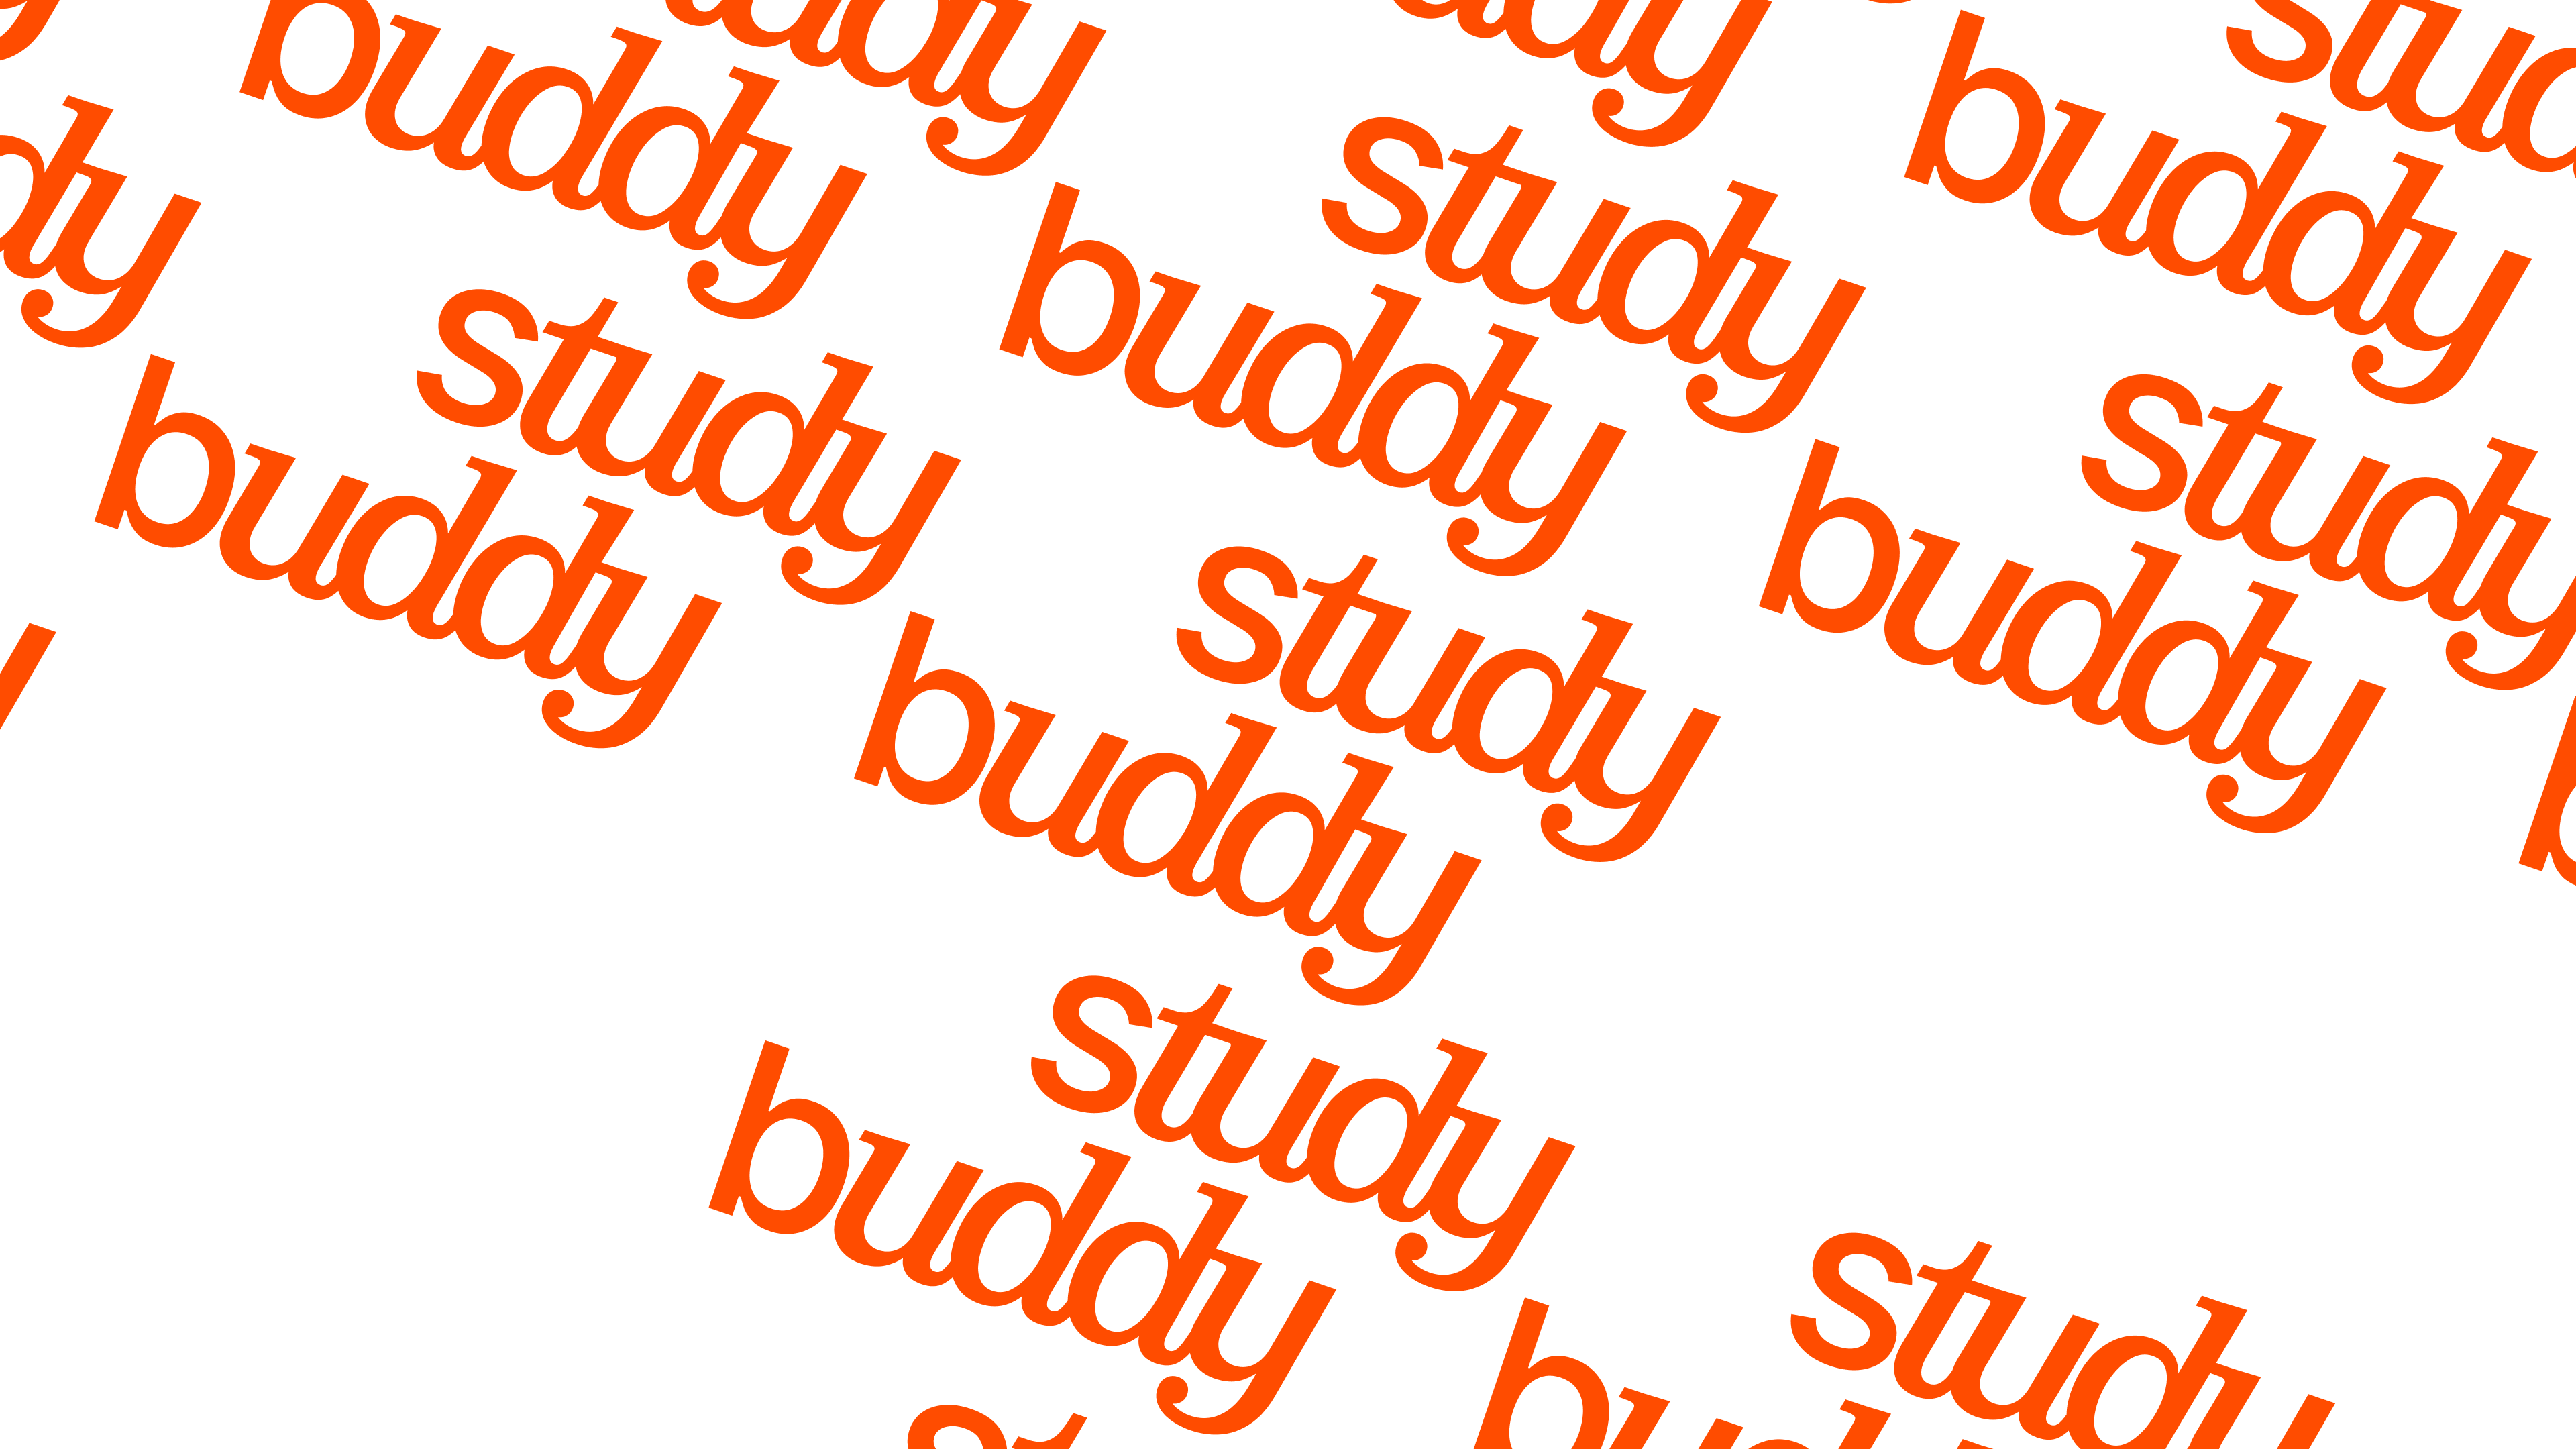 studybuddy 05